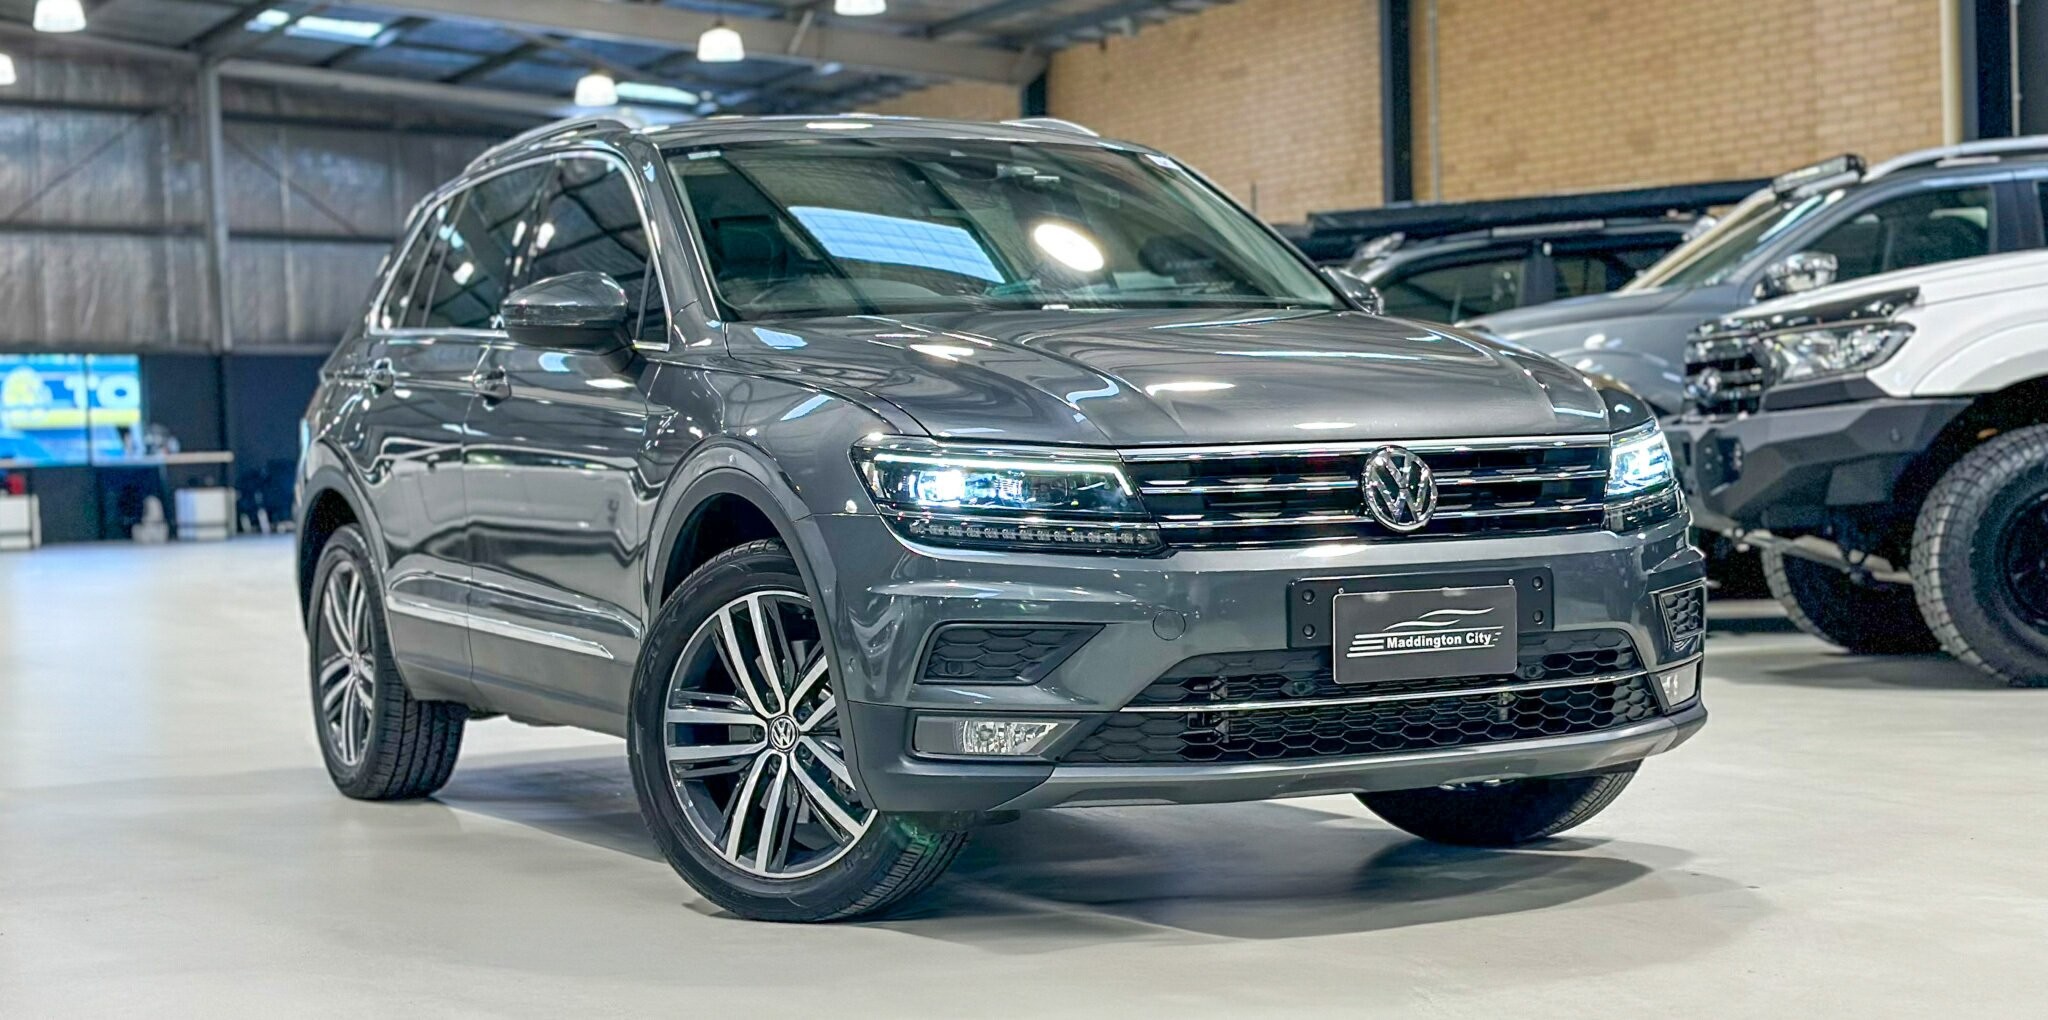 Volkswagen Tiguan image 1